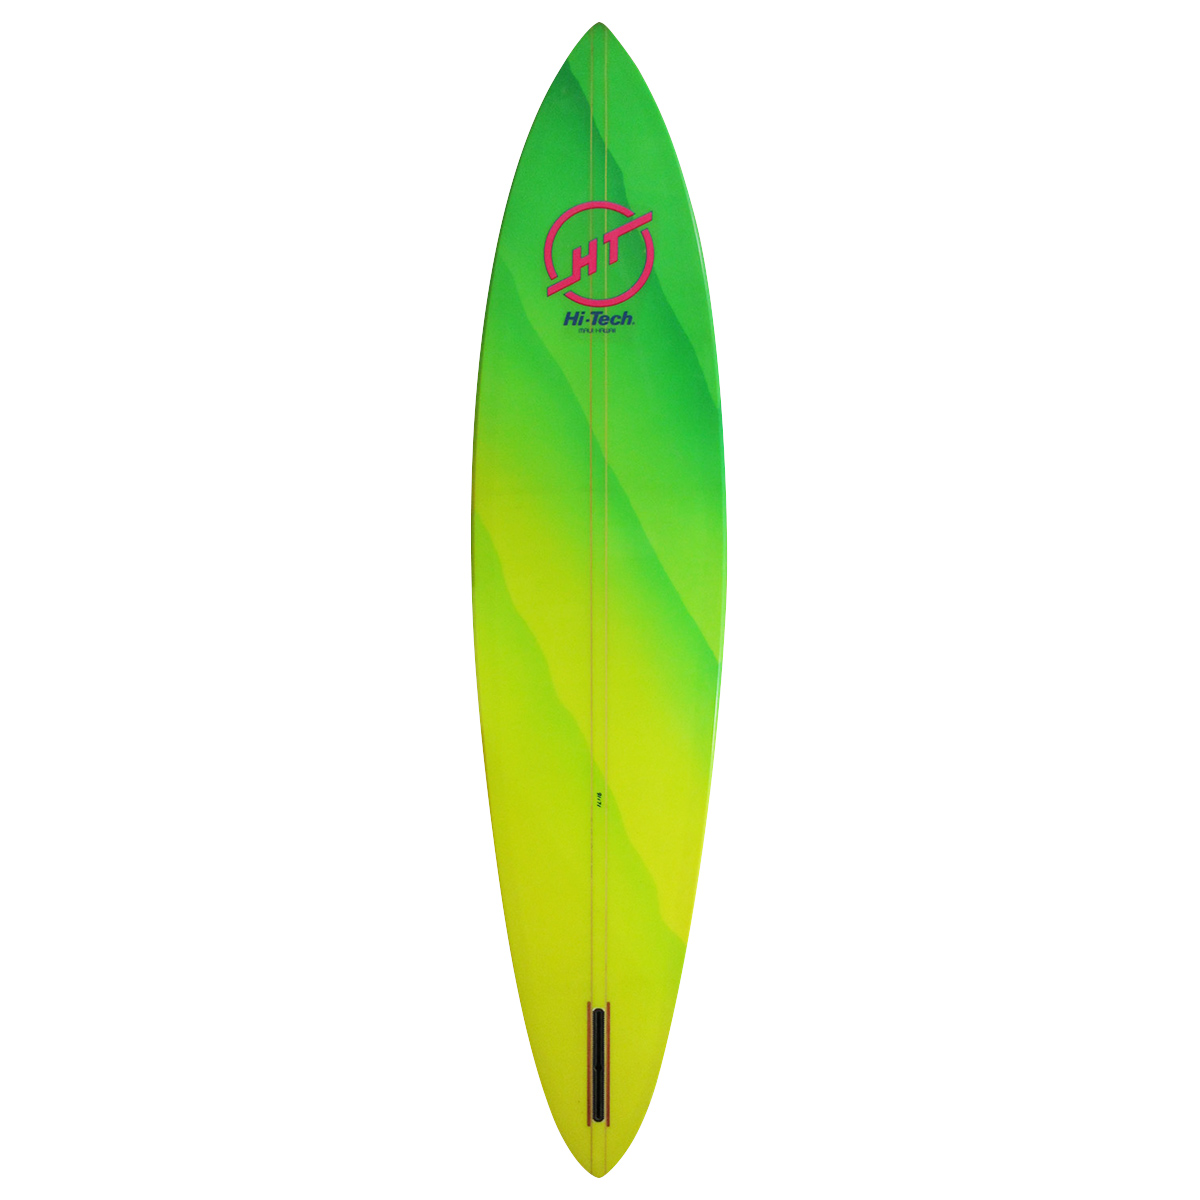 Hi Tech  / Wave rocker 8'6 Wind Surfboard